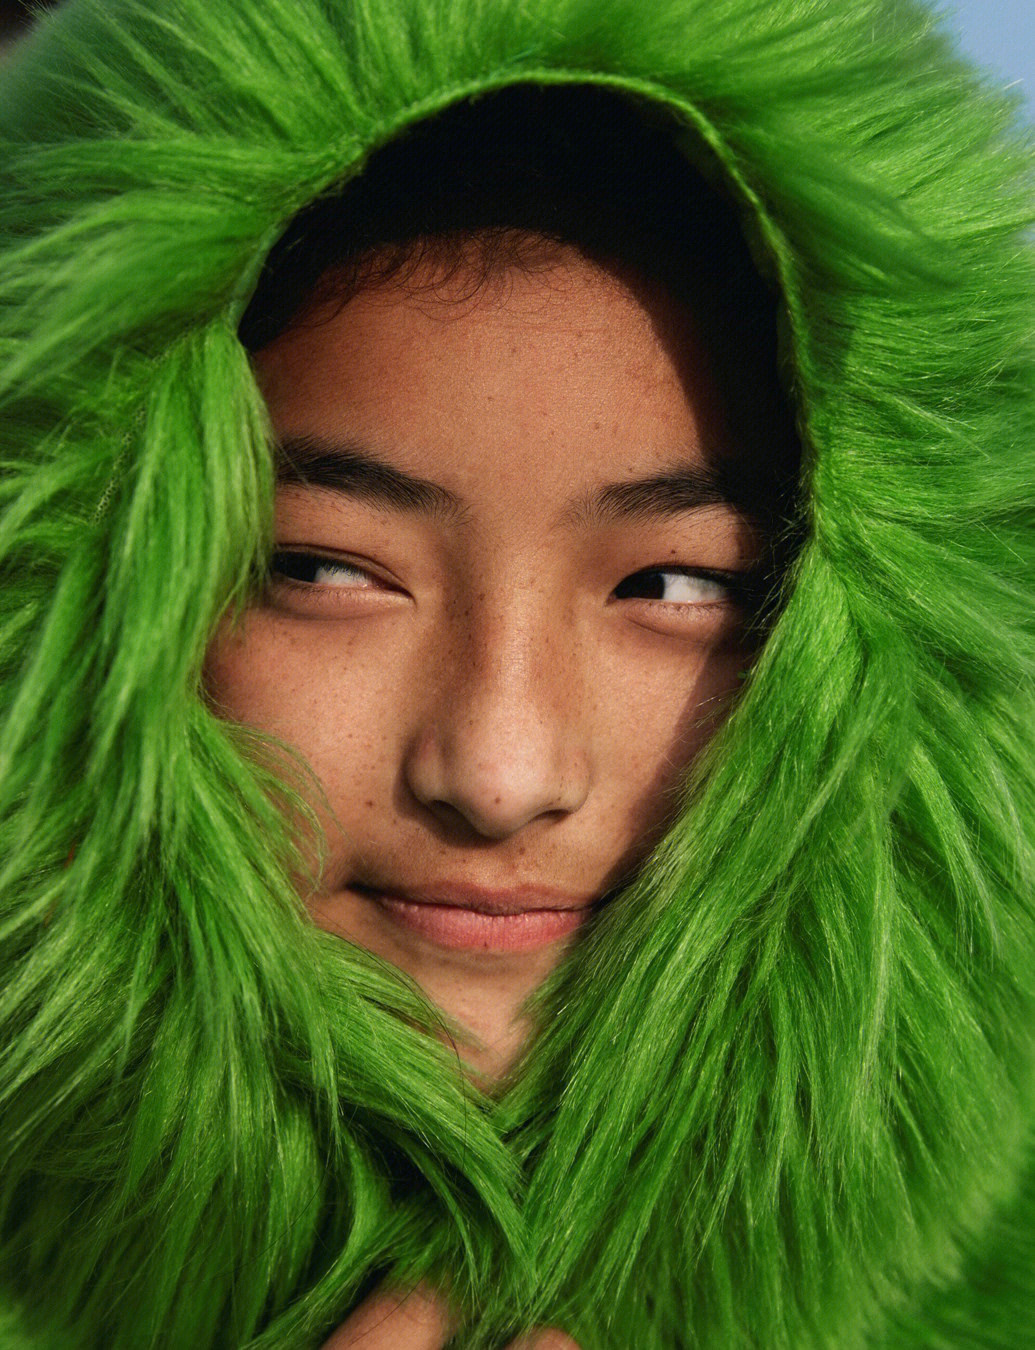 取景于丹增的故乡尼泊尔,这位#世界上年龄最小的时尚摄影师 用镜头